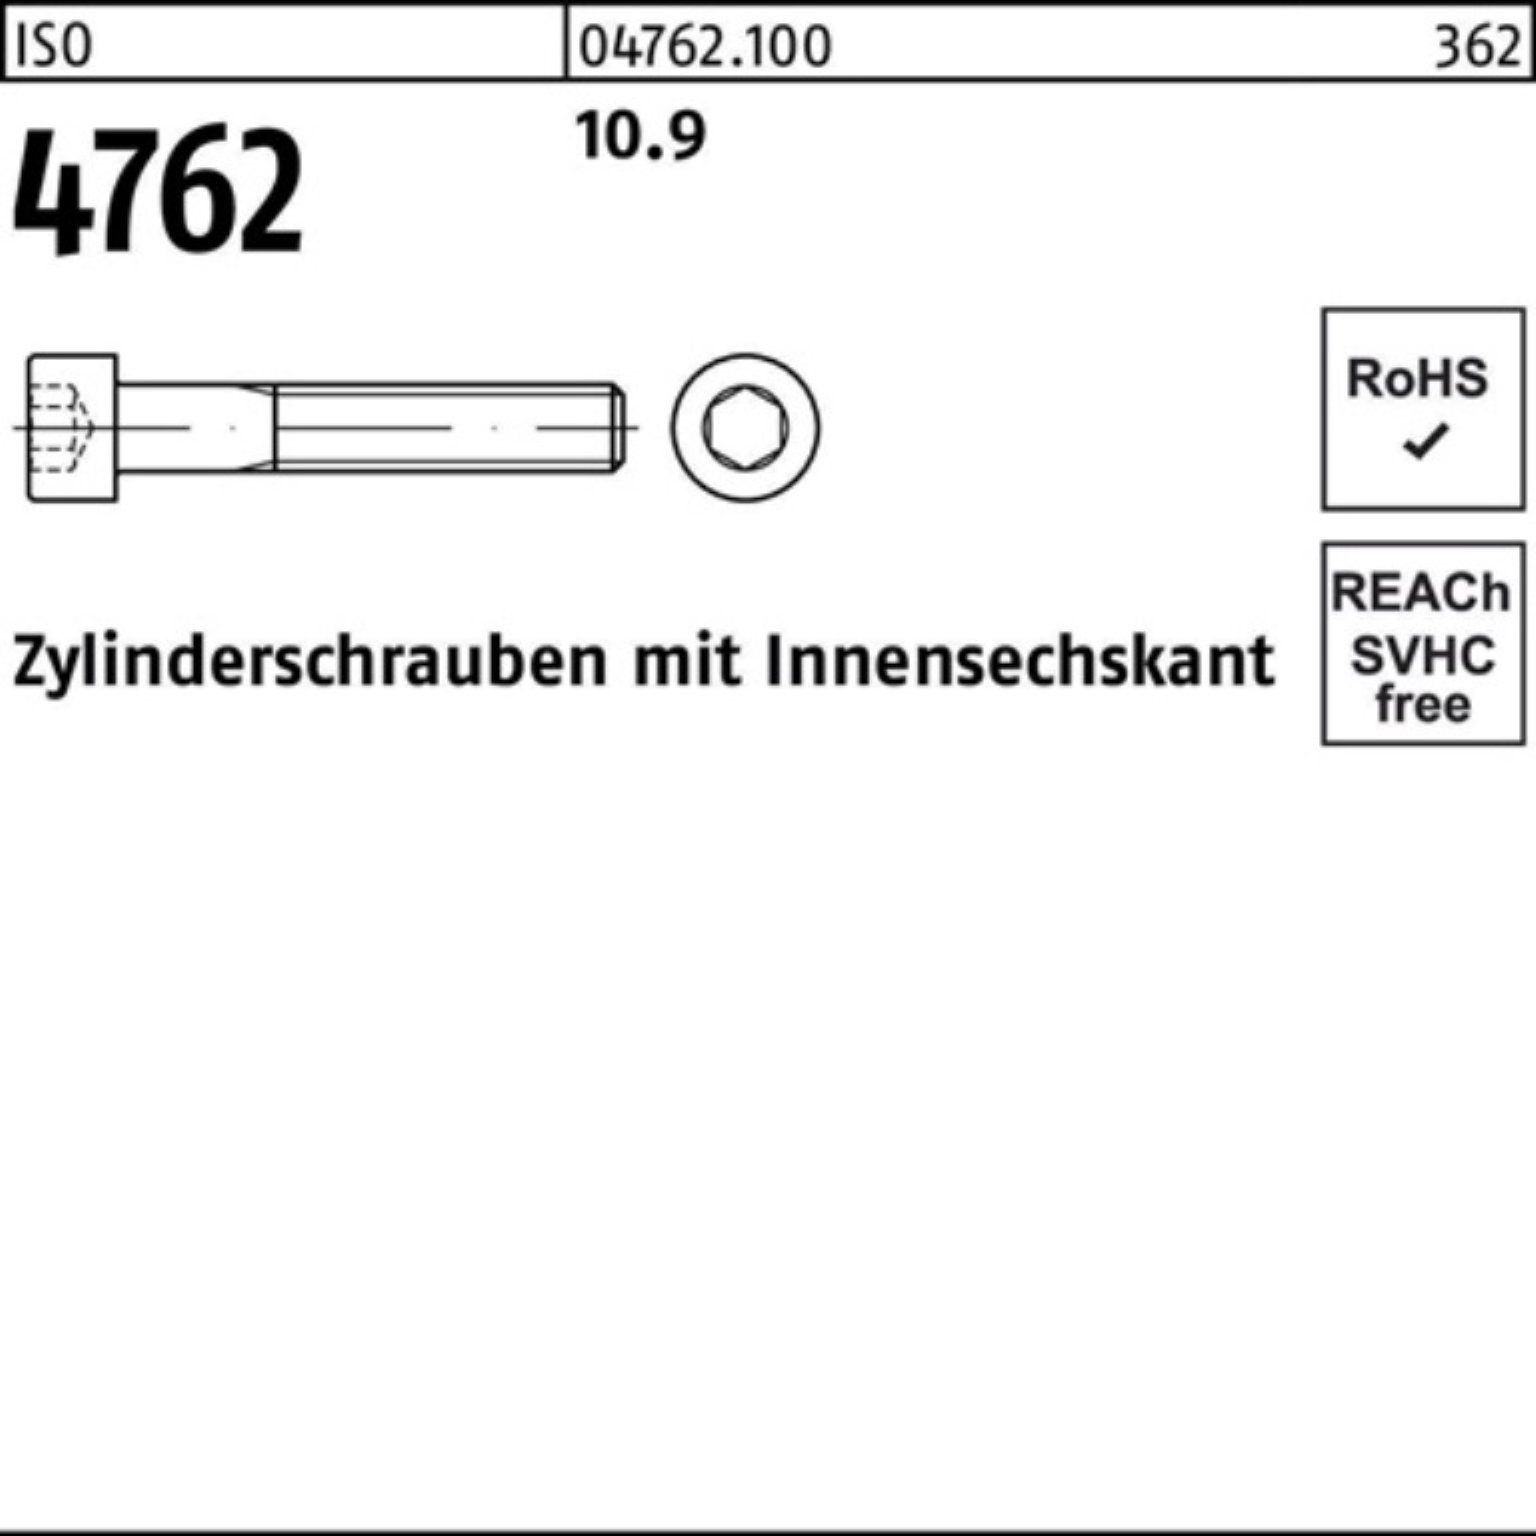 Reyher Zylinderschraube 100er M36x 4762 460 ISO Pack 10.9 1 Innen-6kt Zylinderschraube Stück